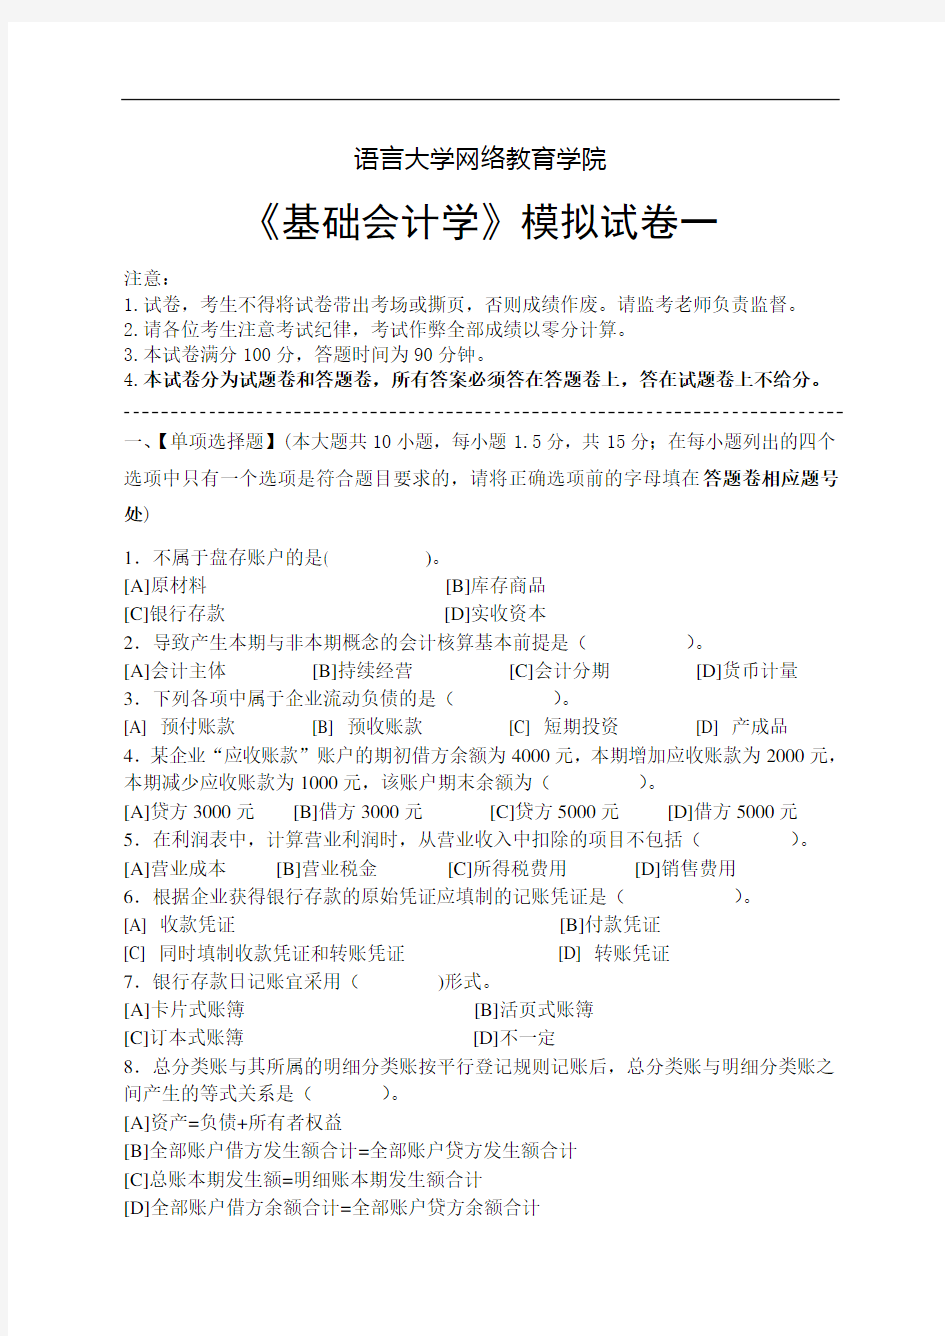 基础会计学模拟试卷一至五(含答案)共5套北京语言大学网络教育学院